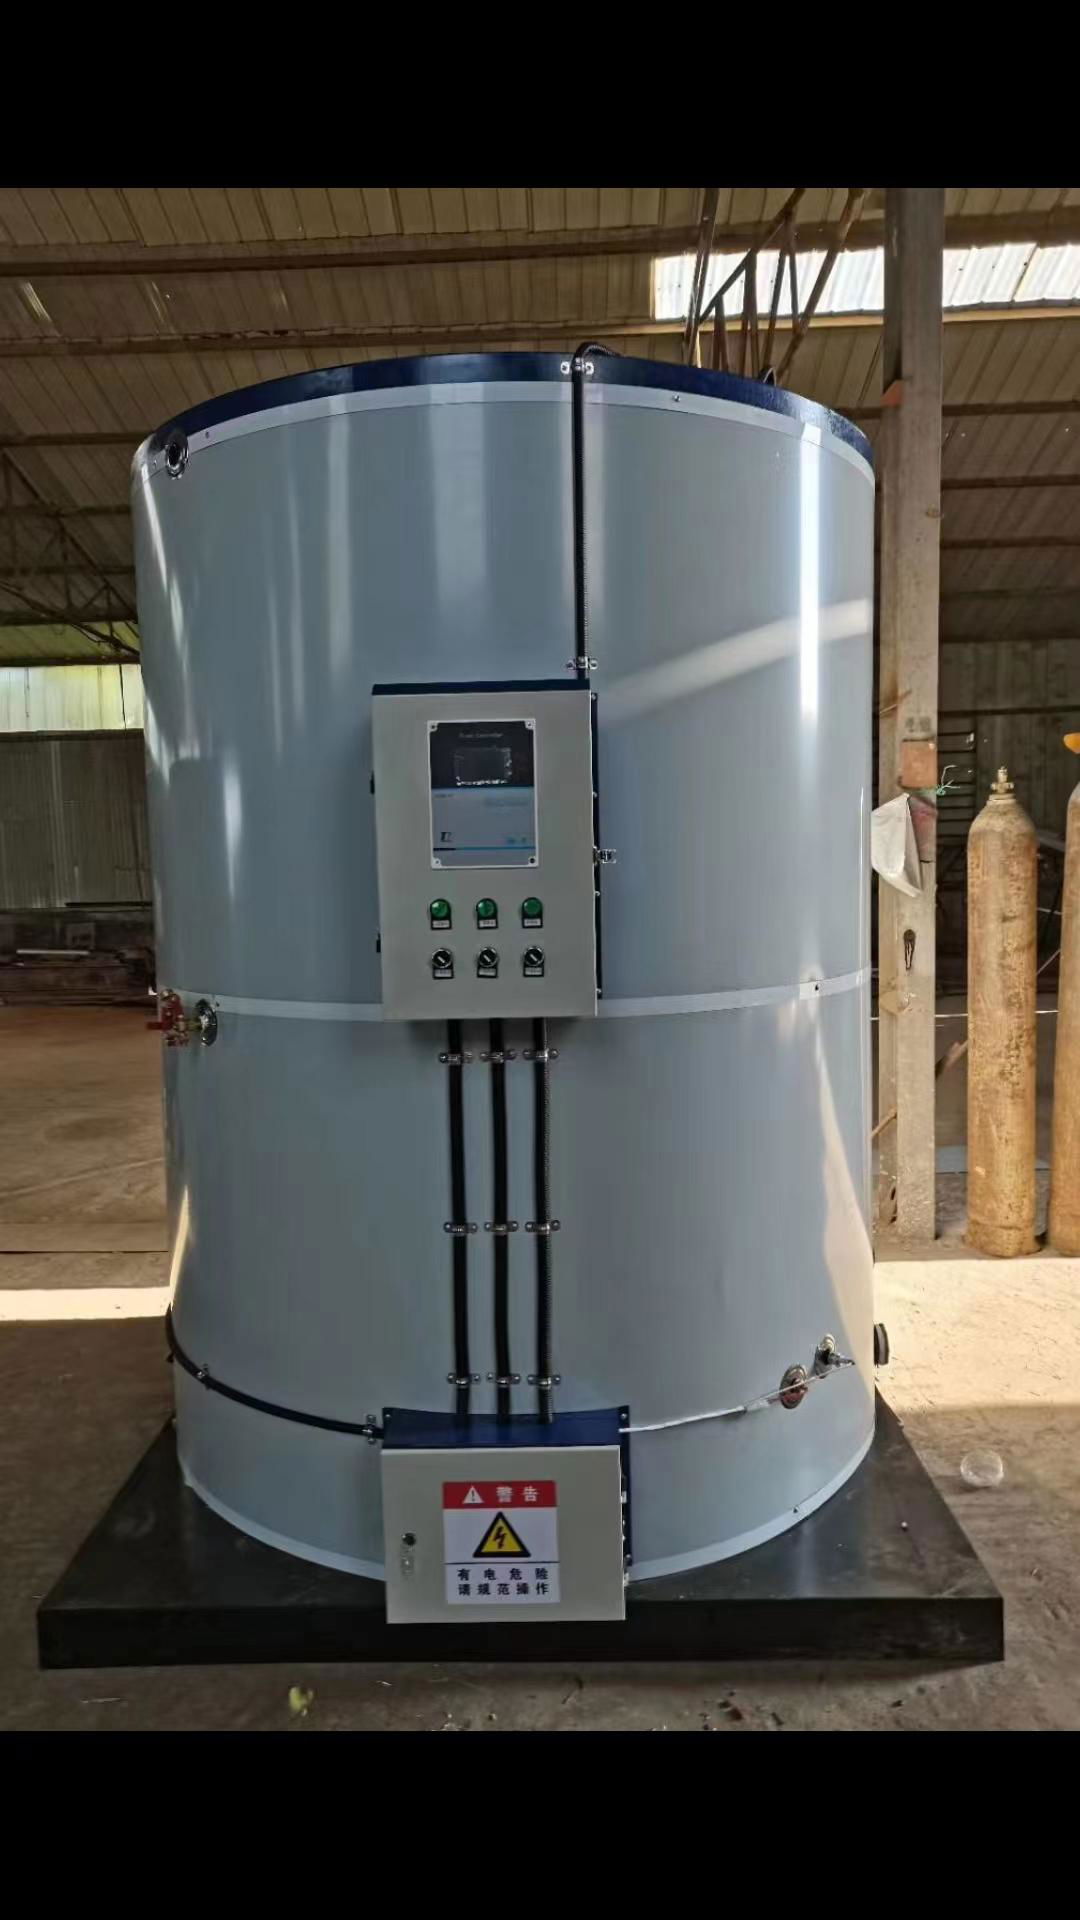   熱銷產品  304食品級不鏽鋼內膽  學校專用電開水鍋爐   DQX-500D 4